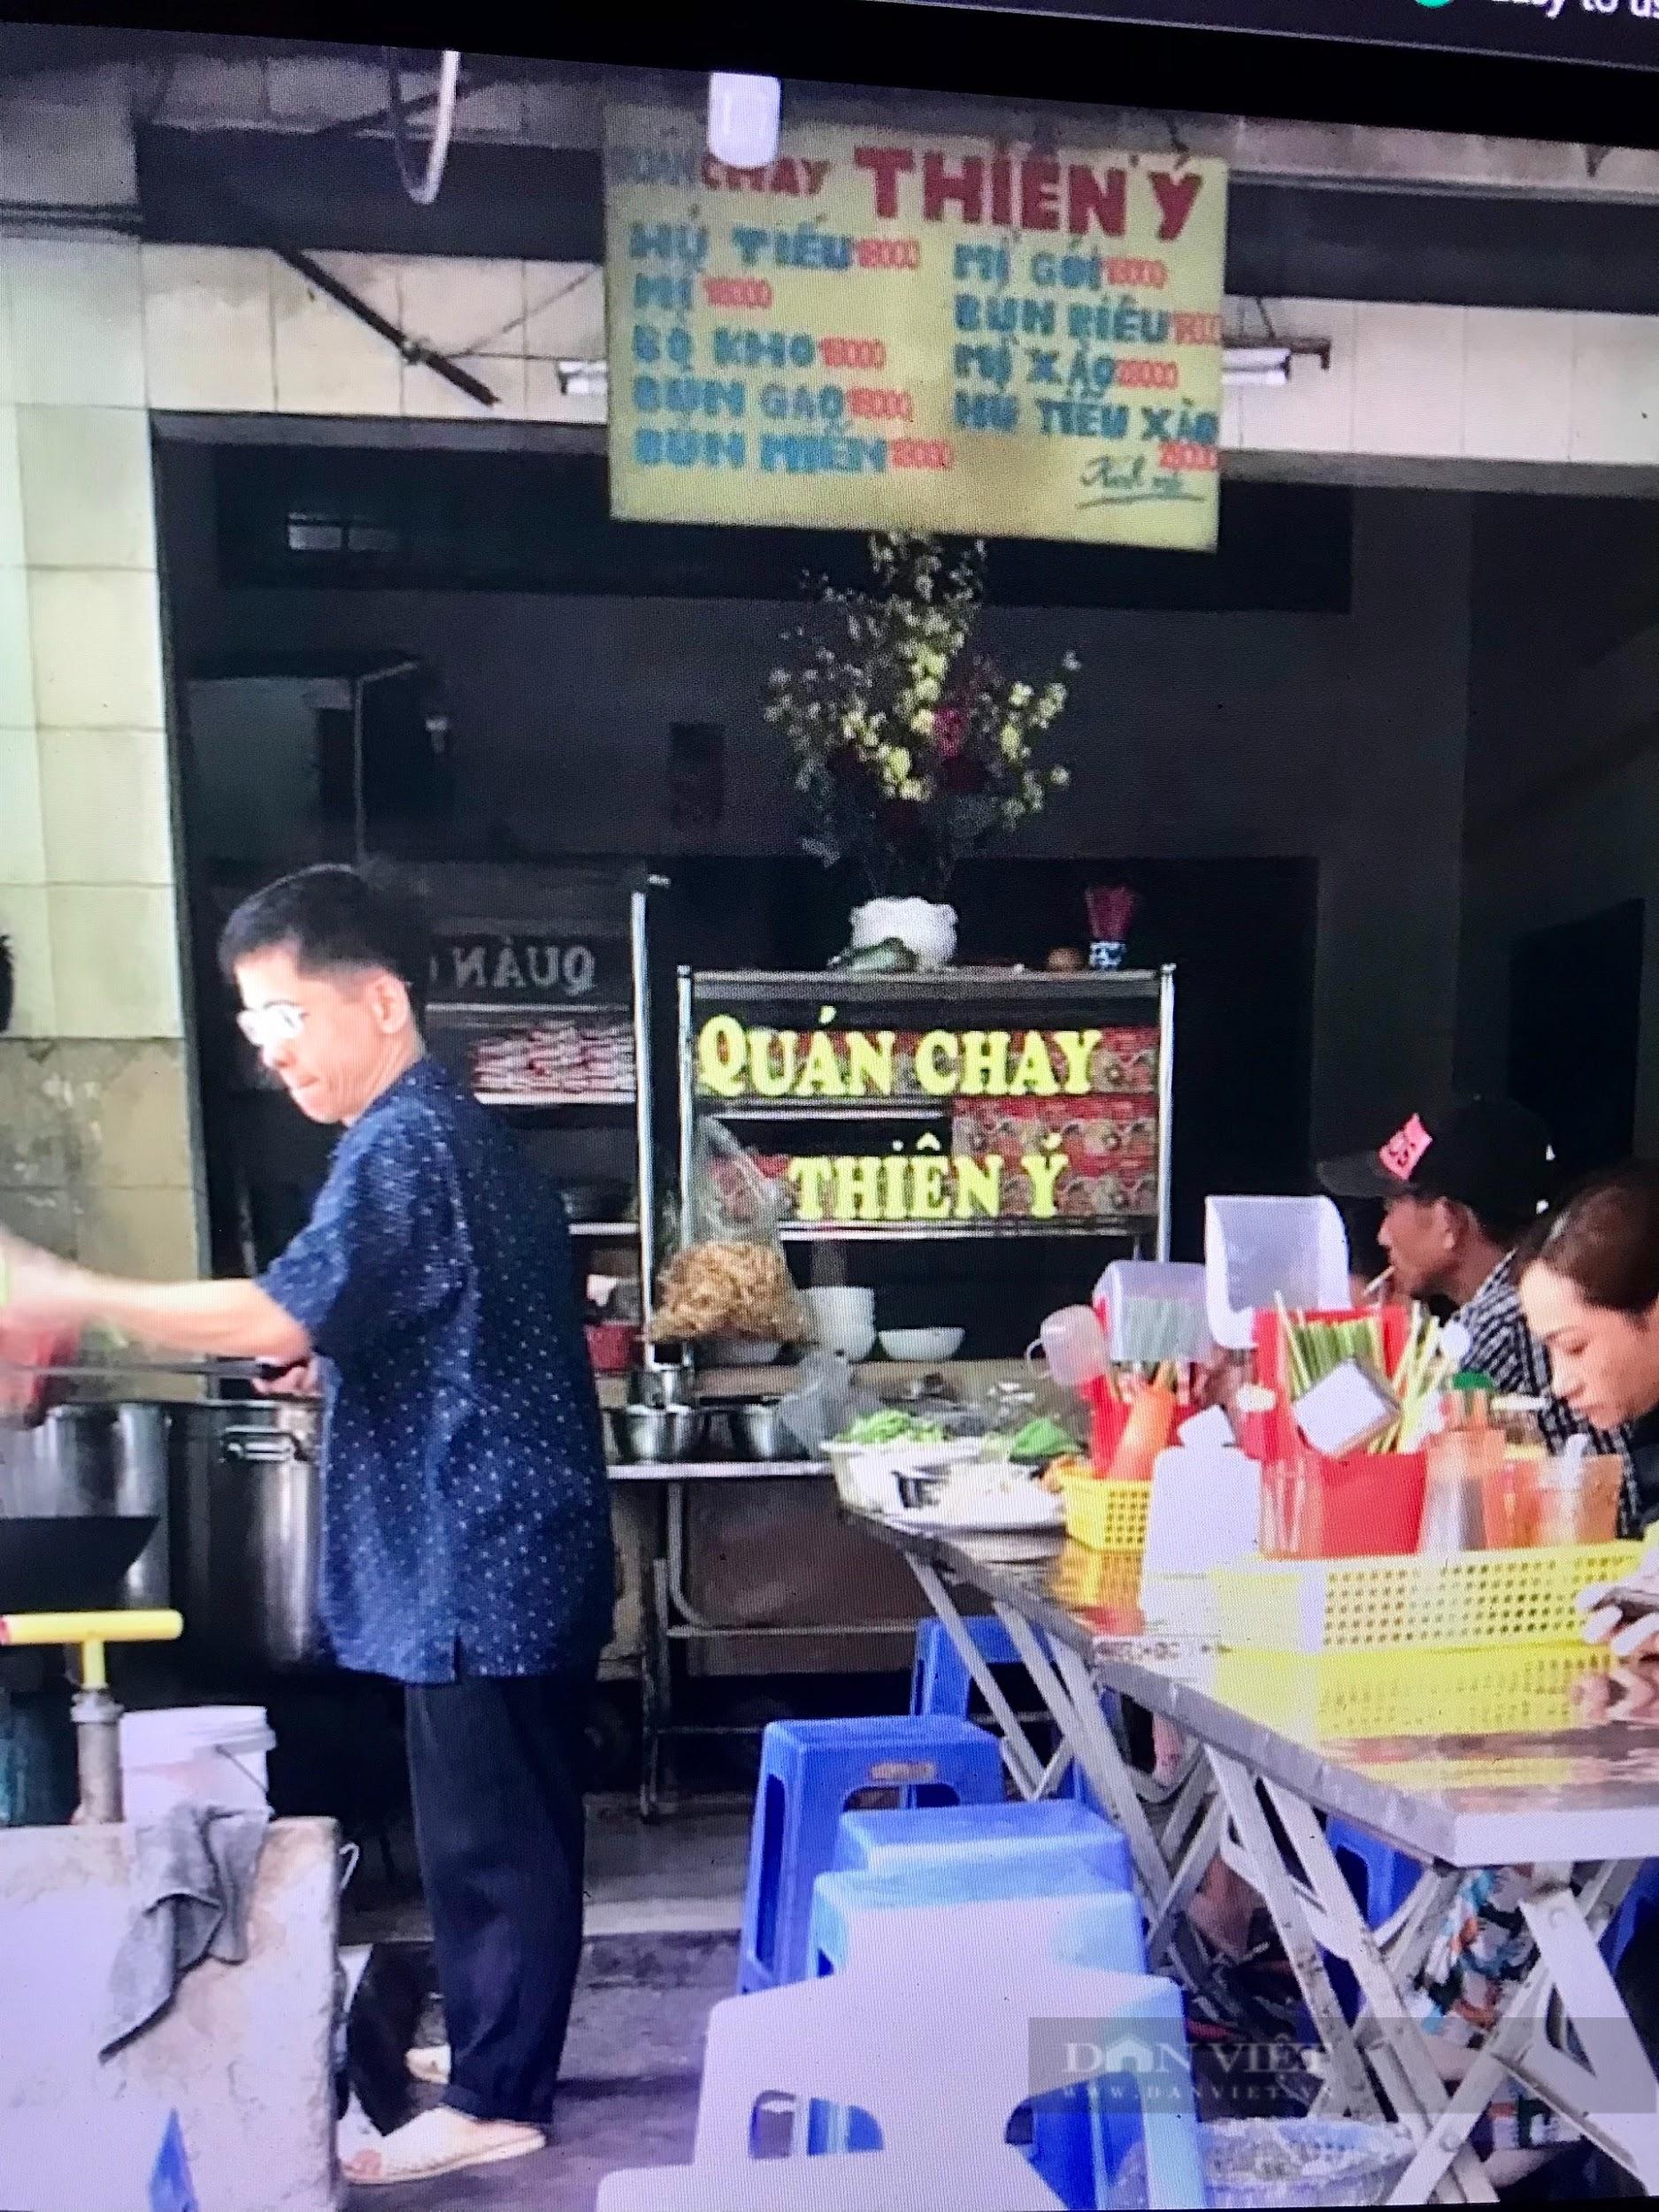 Có gì hấp dẫn ở "Ẩm thực chay xóm Giá" tuổi đời hơn 40 năm tại Sài Gòn? - 3